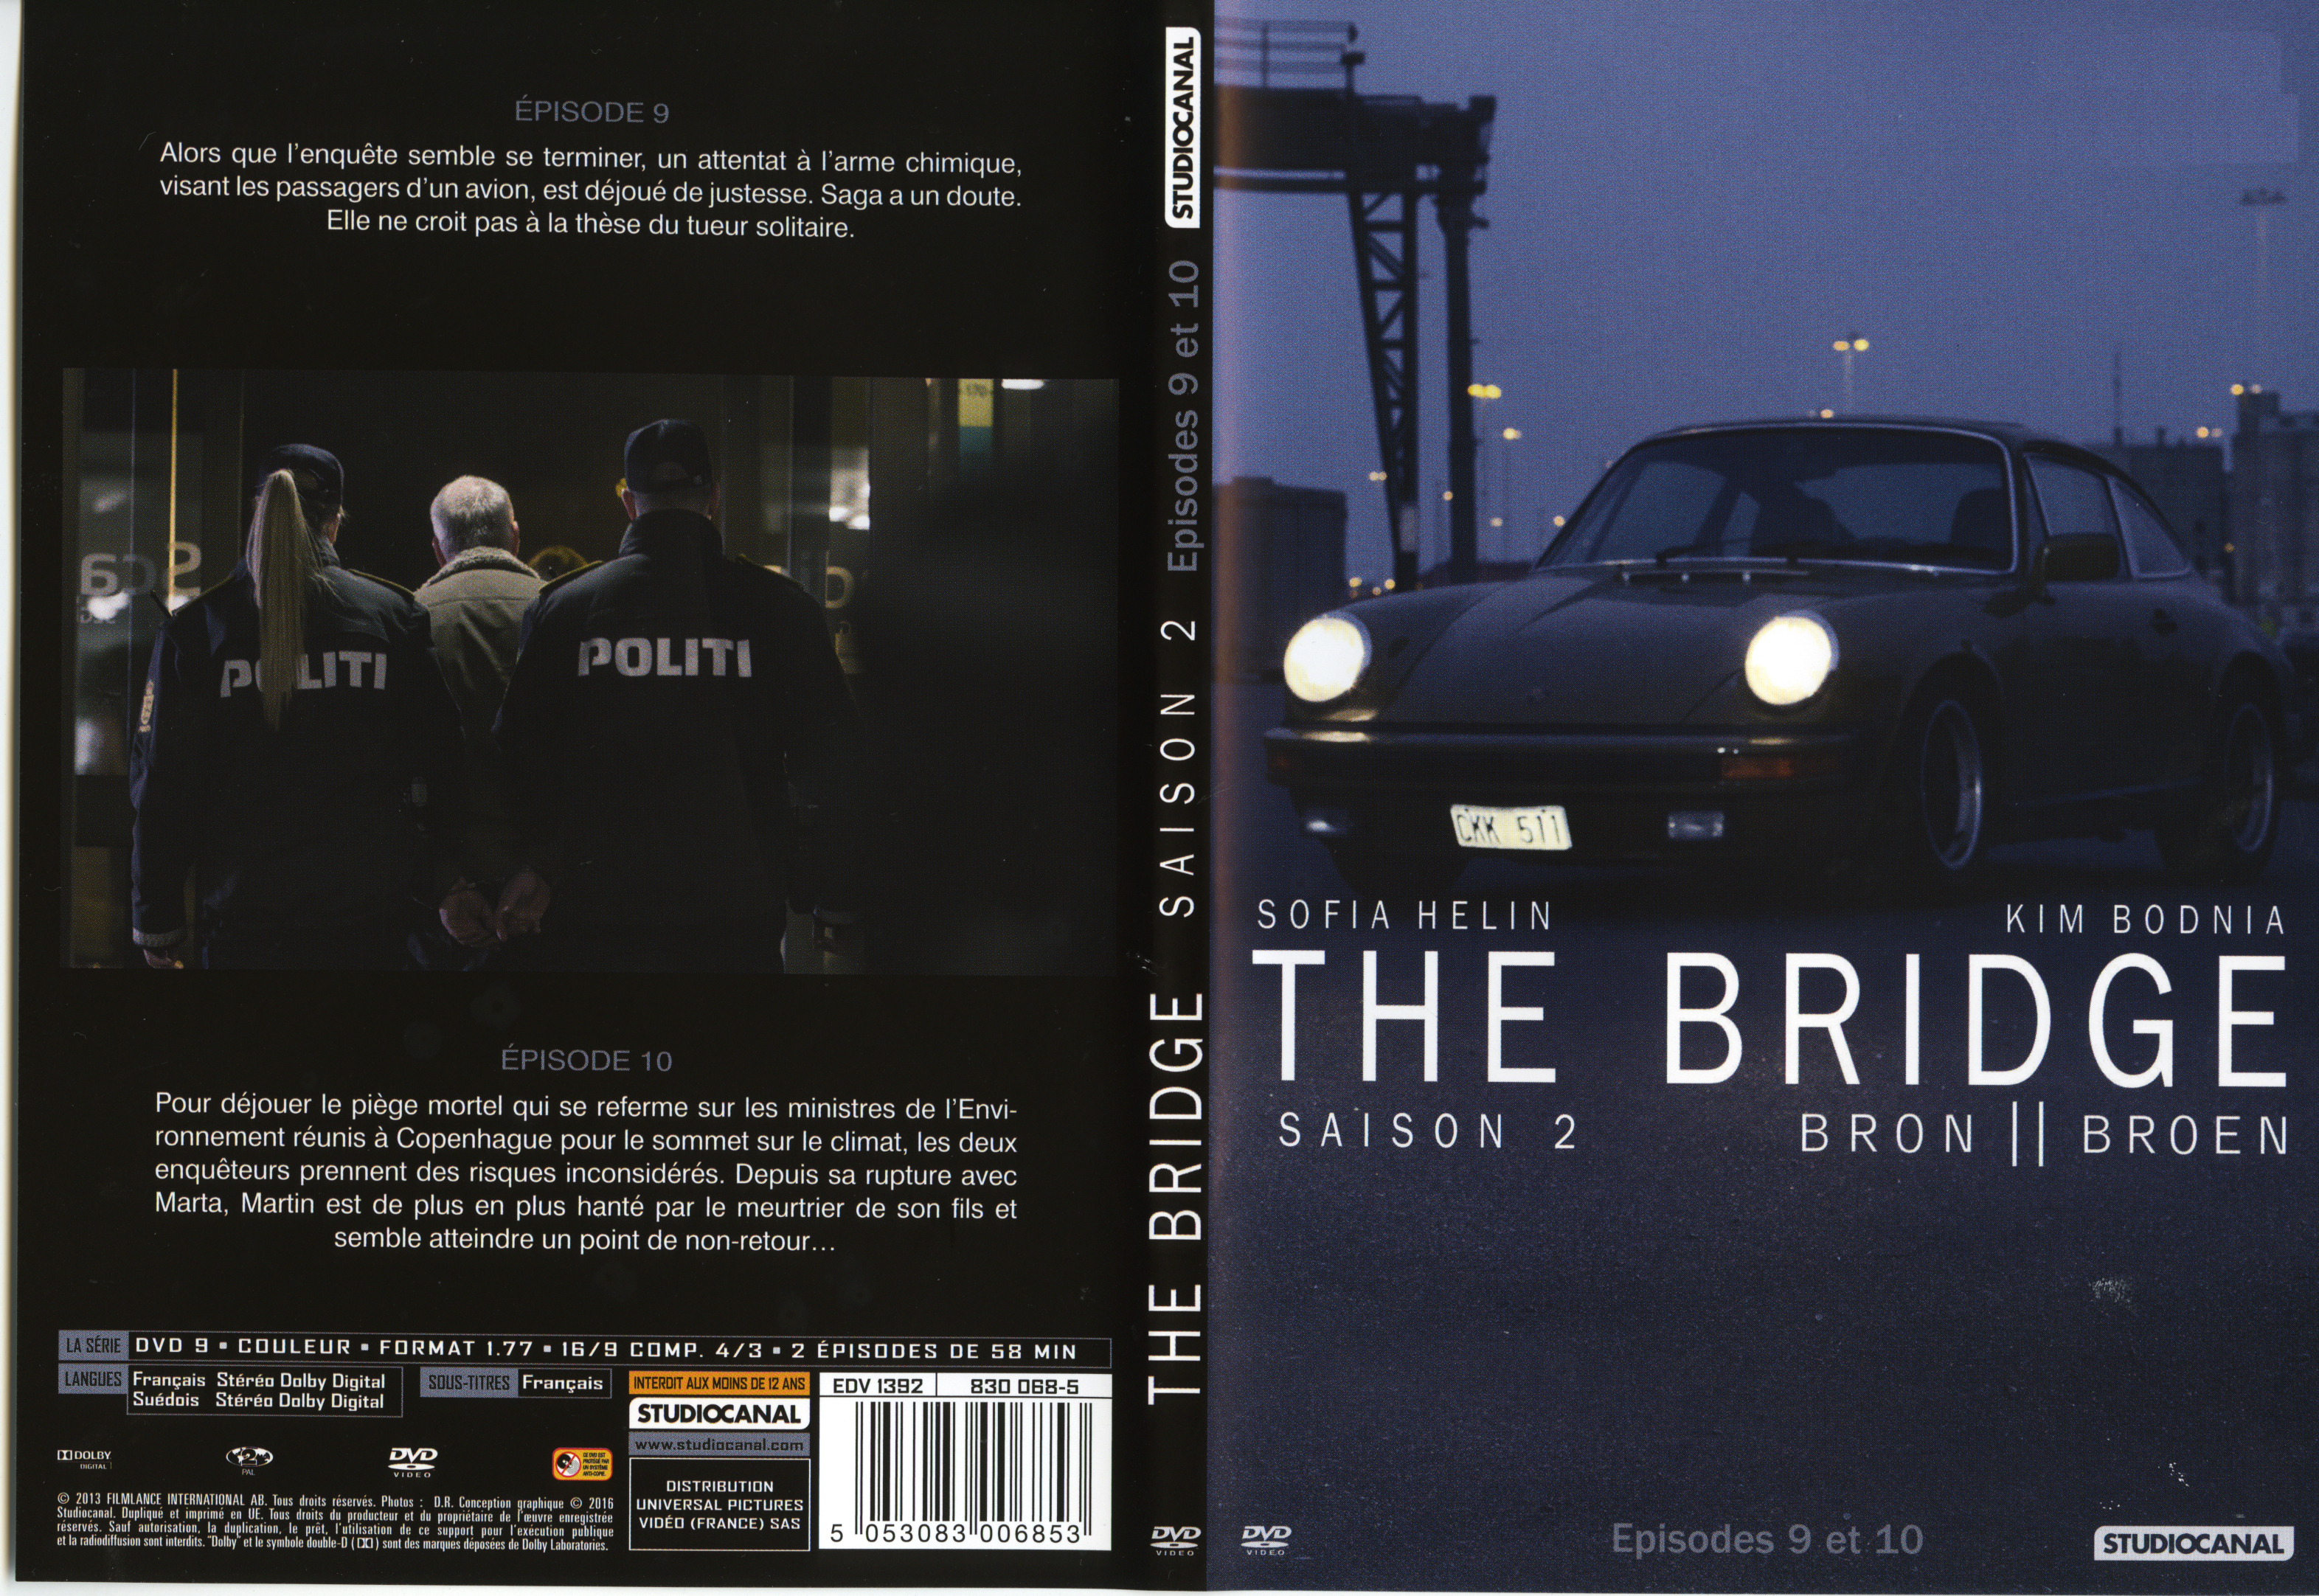 Jaquette DVD The Bridge Saison 2 DVD 4